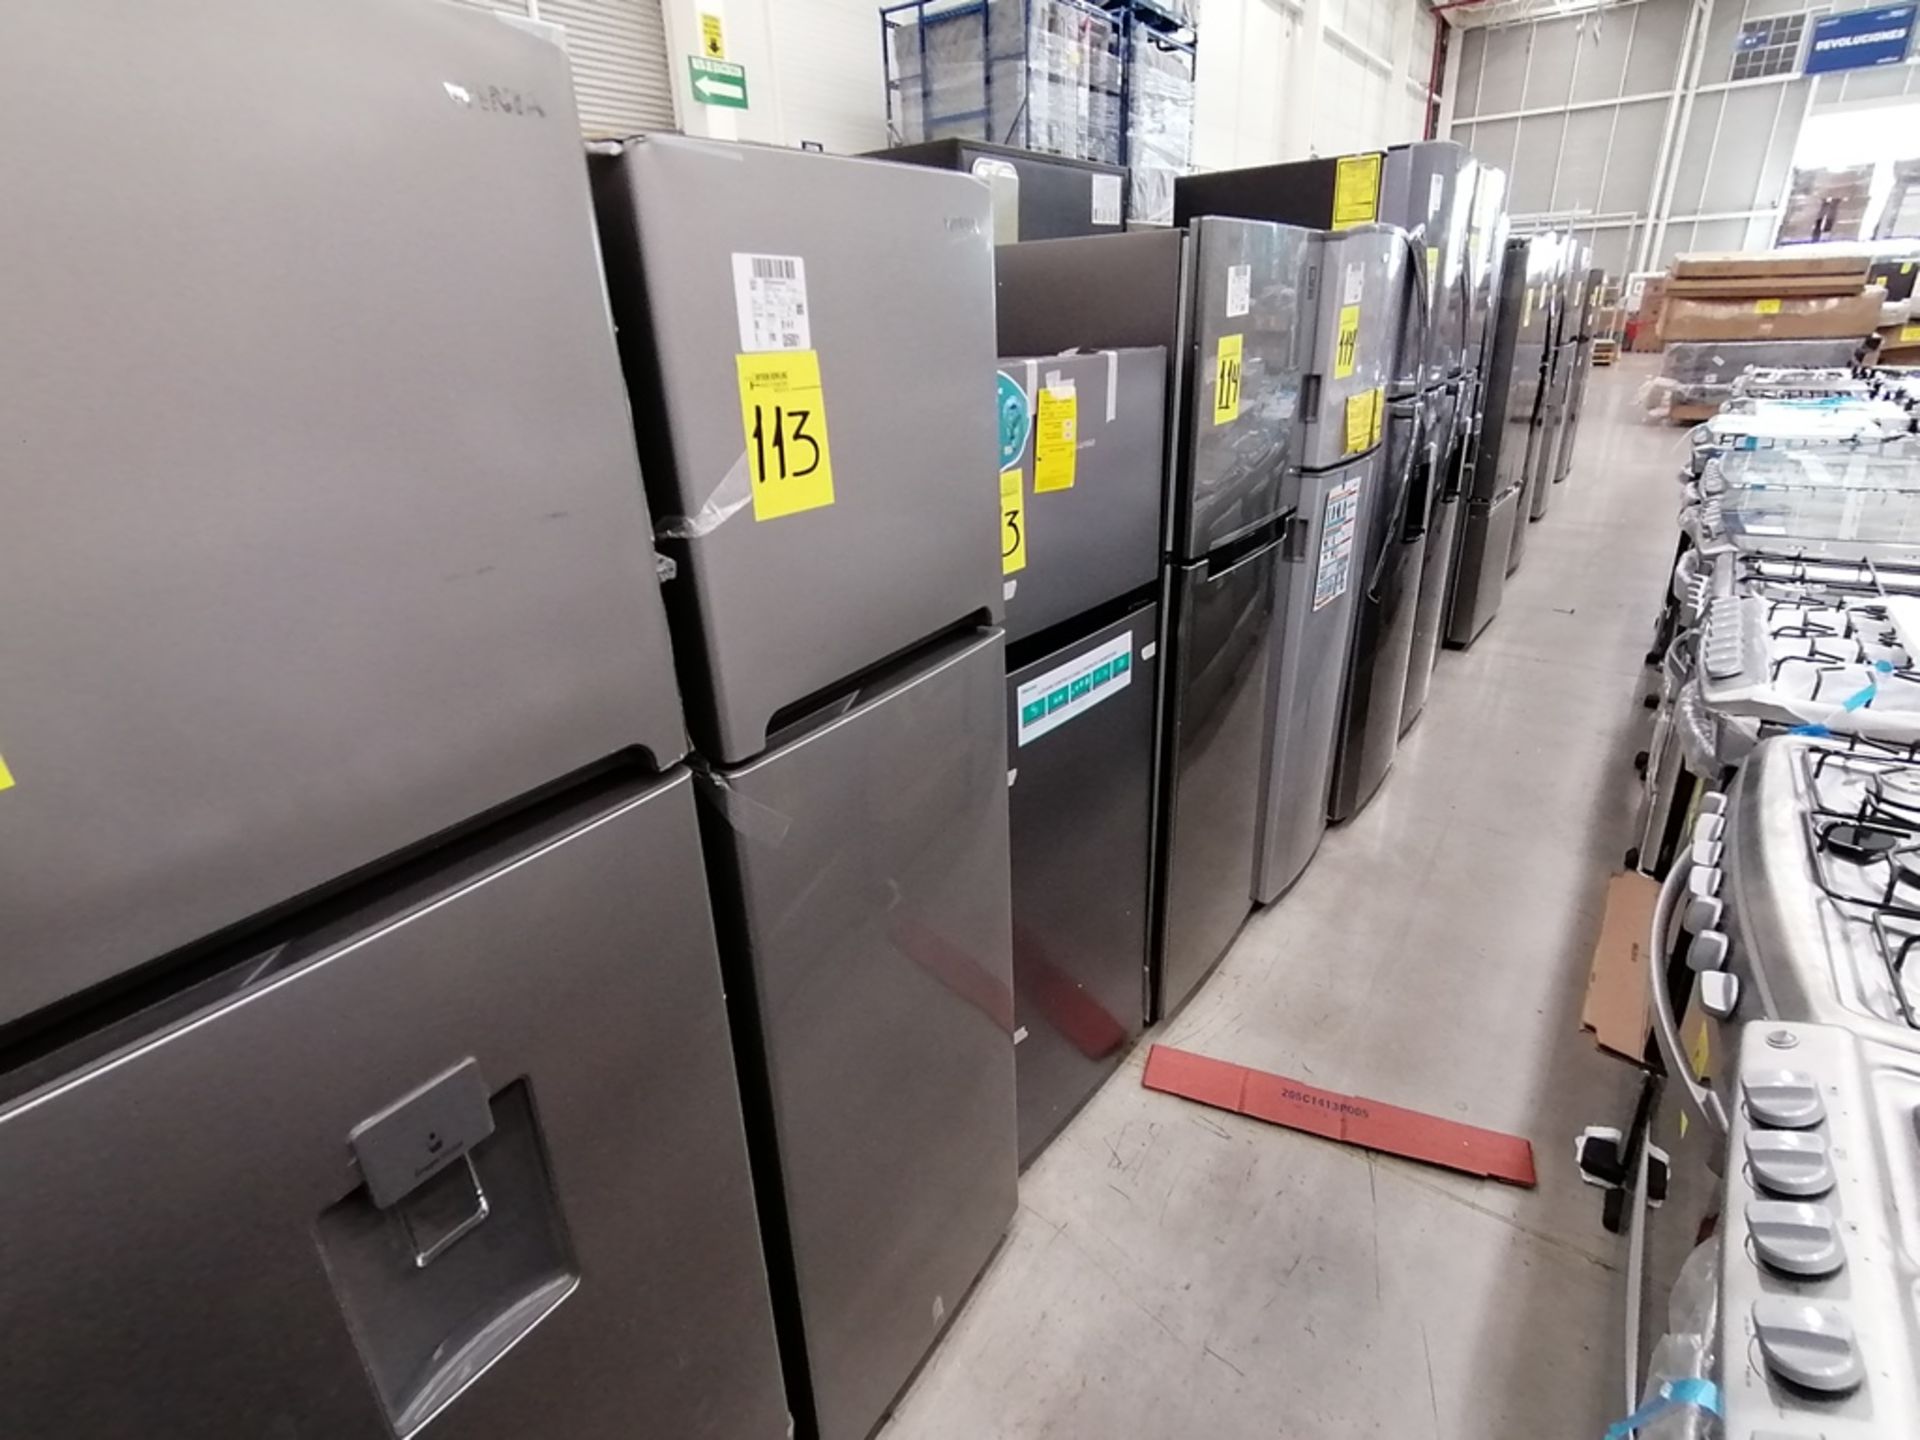 Lote de 2 refrigeradores incluye: 1 Refrigerador, Marca Winia, Modelo DFR25210GN, Serie MR21ZN08401 - Image 2 of 15